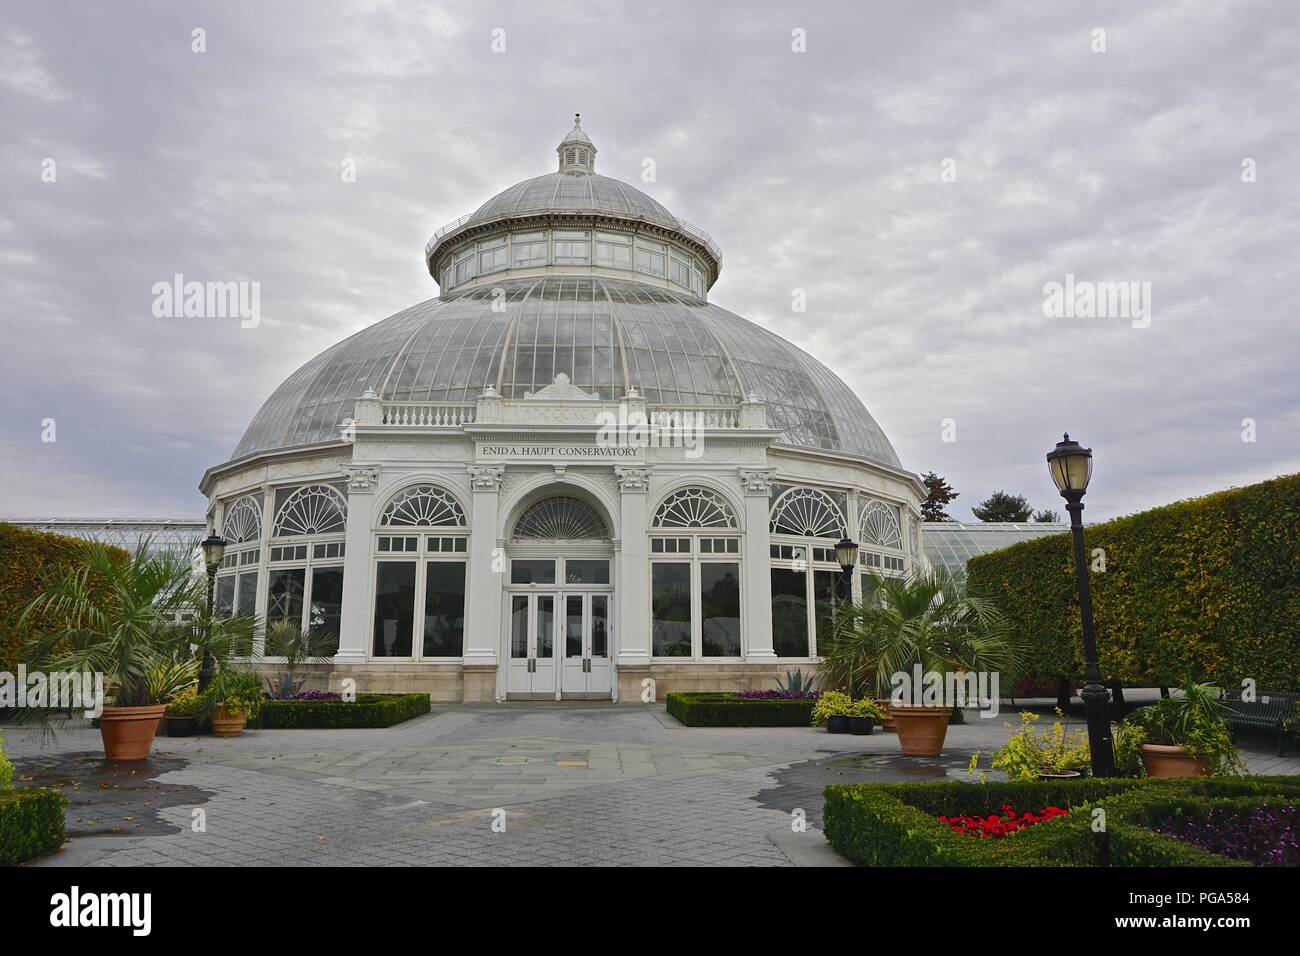 Il Enid A. Haupt Conservatory (1902) in New York Giardino Botanico, è stato modellato dopo la Casa delle Palme presso il giardino botanico reale di Kew, Inghilterra. Foto Stock